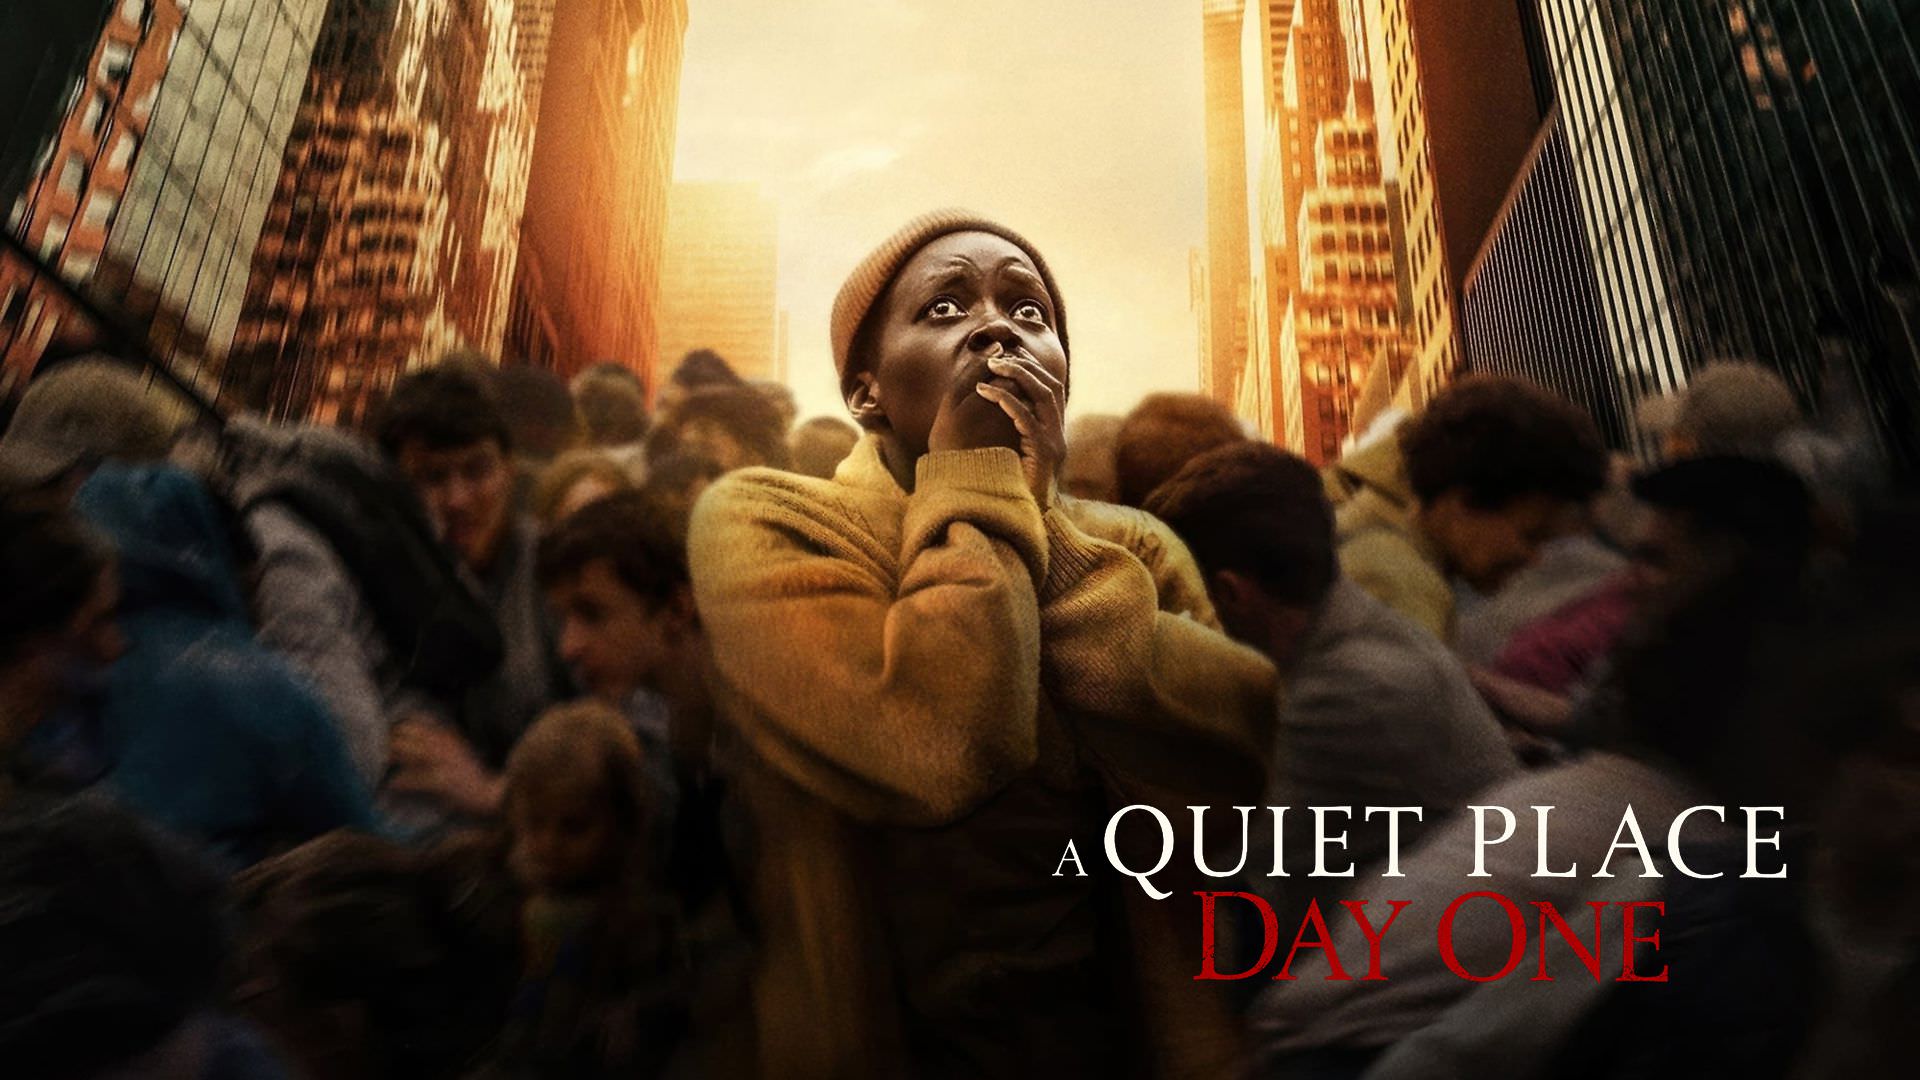 تریلر جدید فیلم A Quiet Place: Day One فرار انسان ها از موجودات فضایی را نشان می دهد